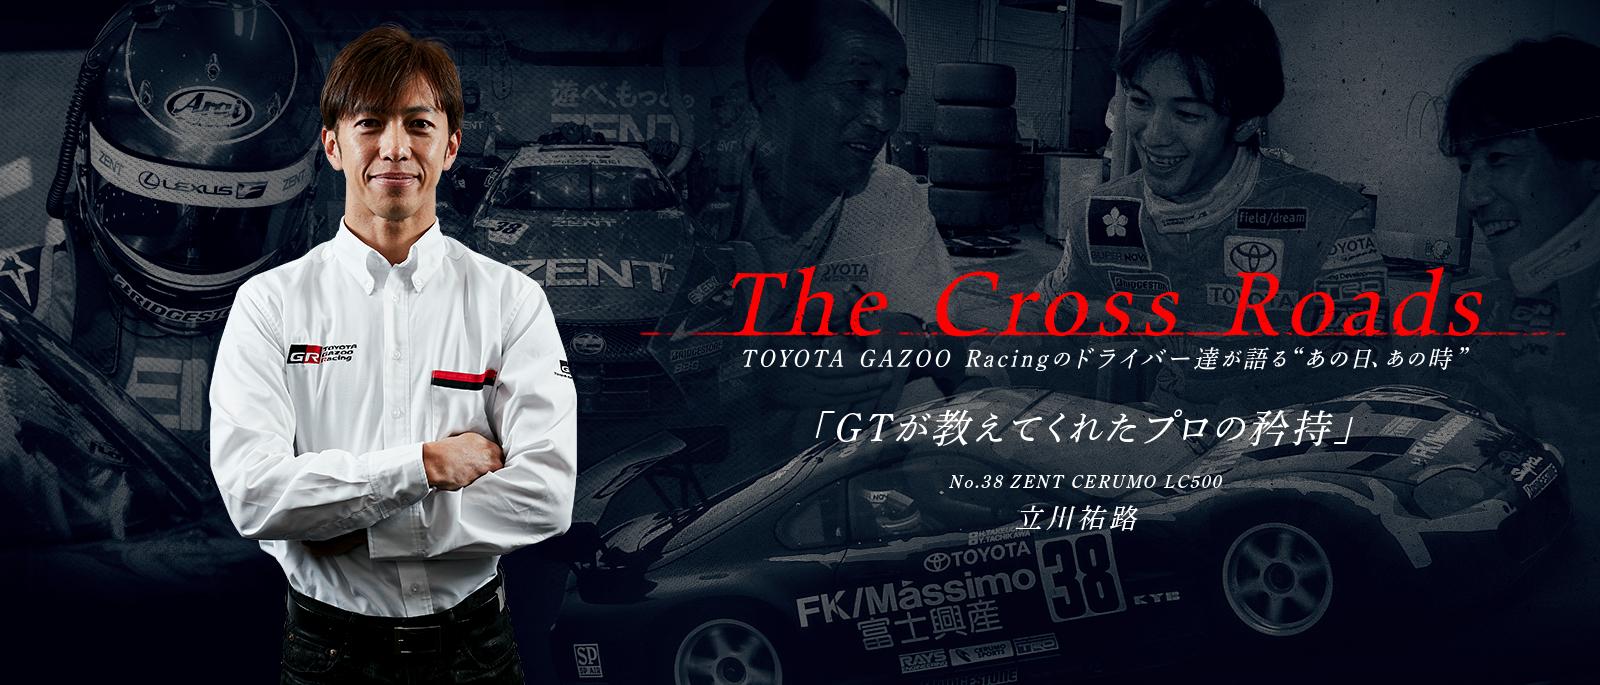 立川 祐路「GTが教えてくれたプロの矜持」 | The Cross Roads 〜TOYOTA GAZOO Racingのドライバーたちが語るあの日、あの時〜